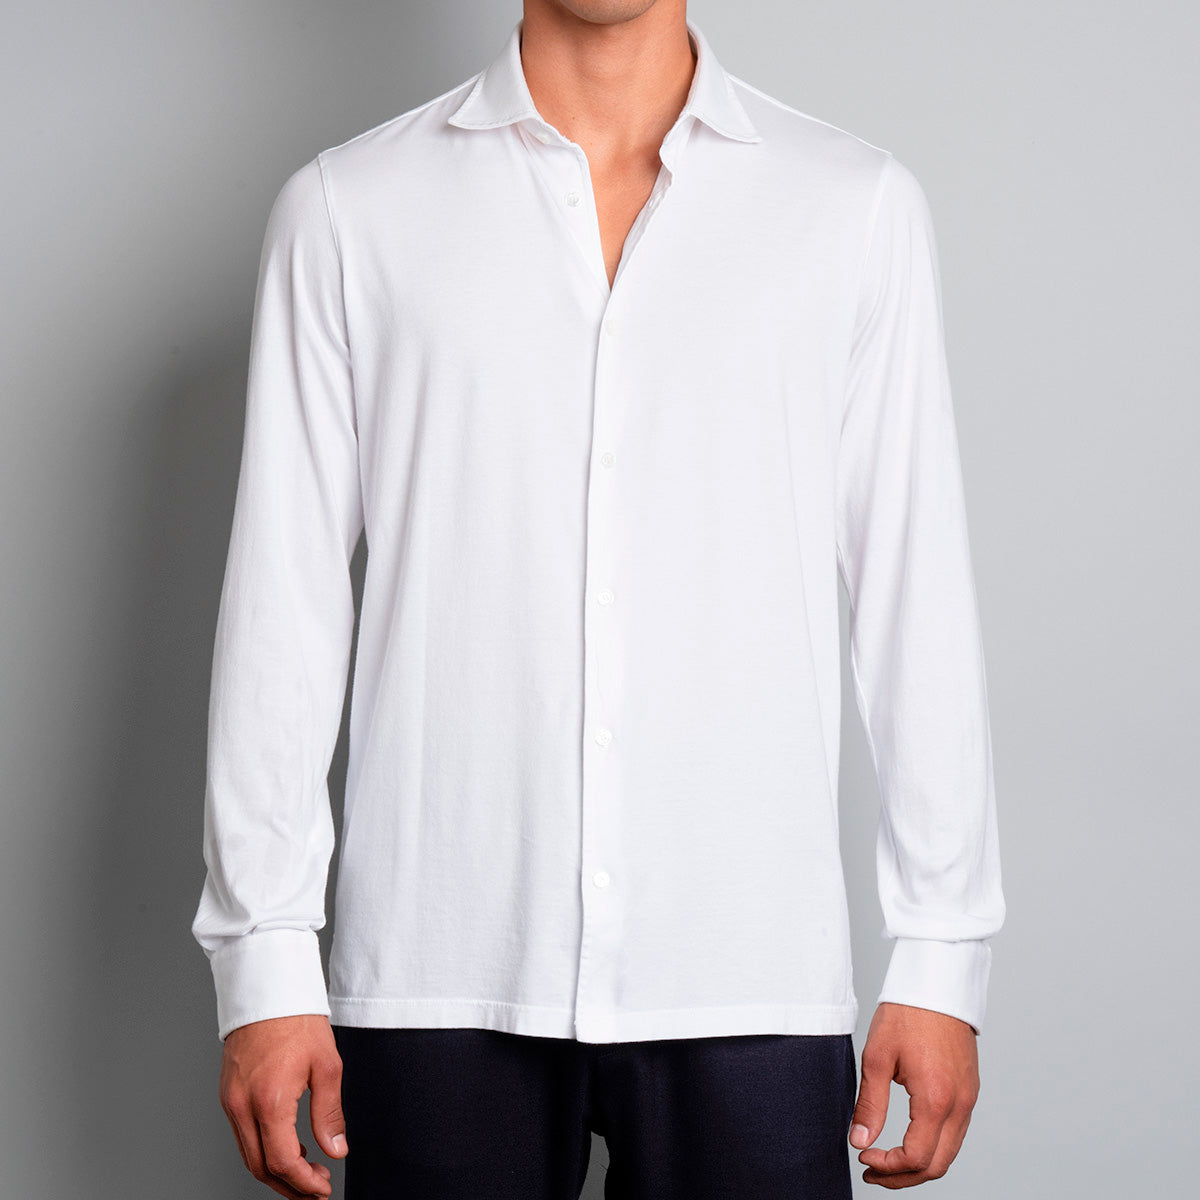 Jason Jersey Shirt - White